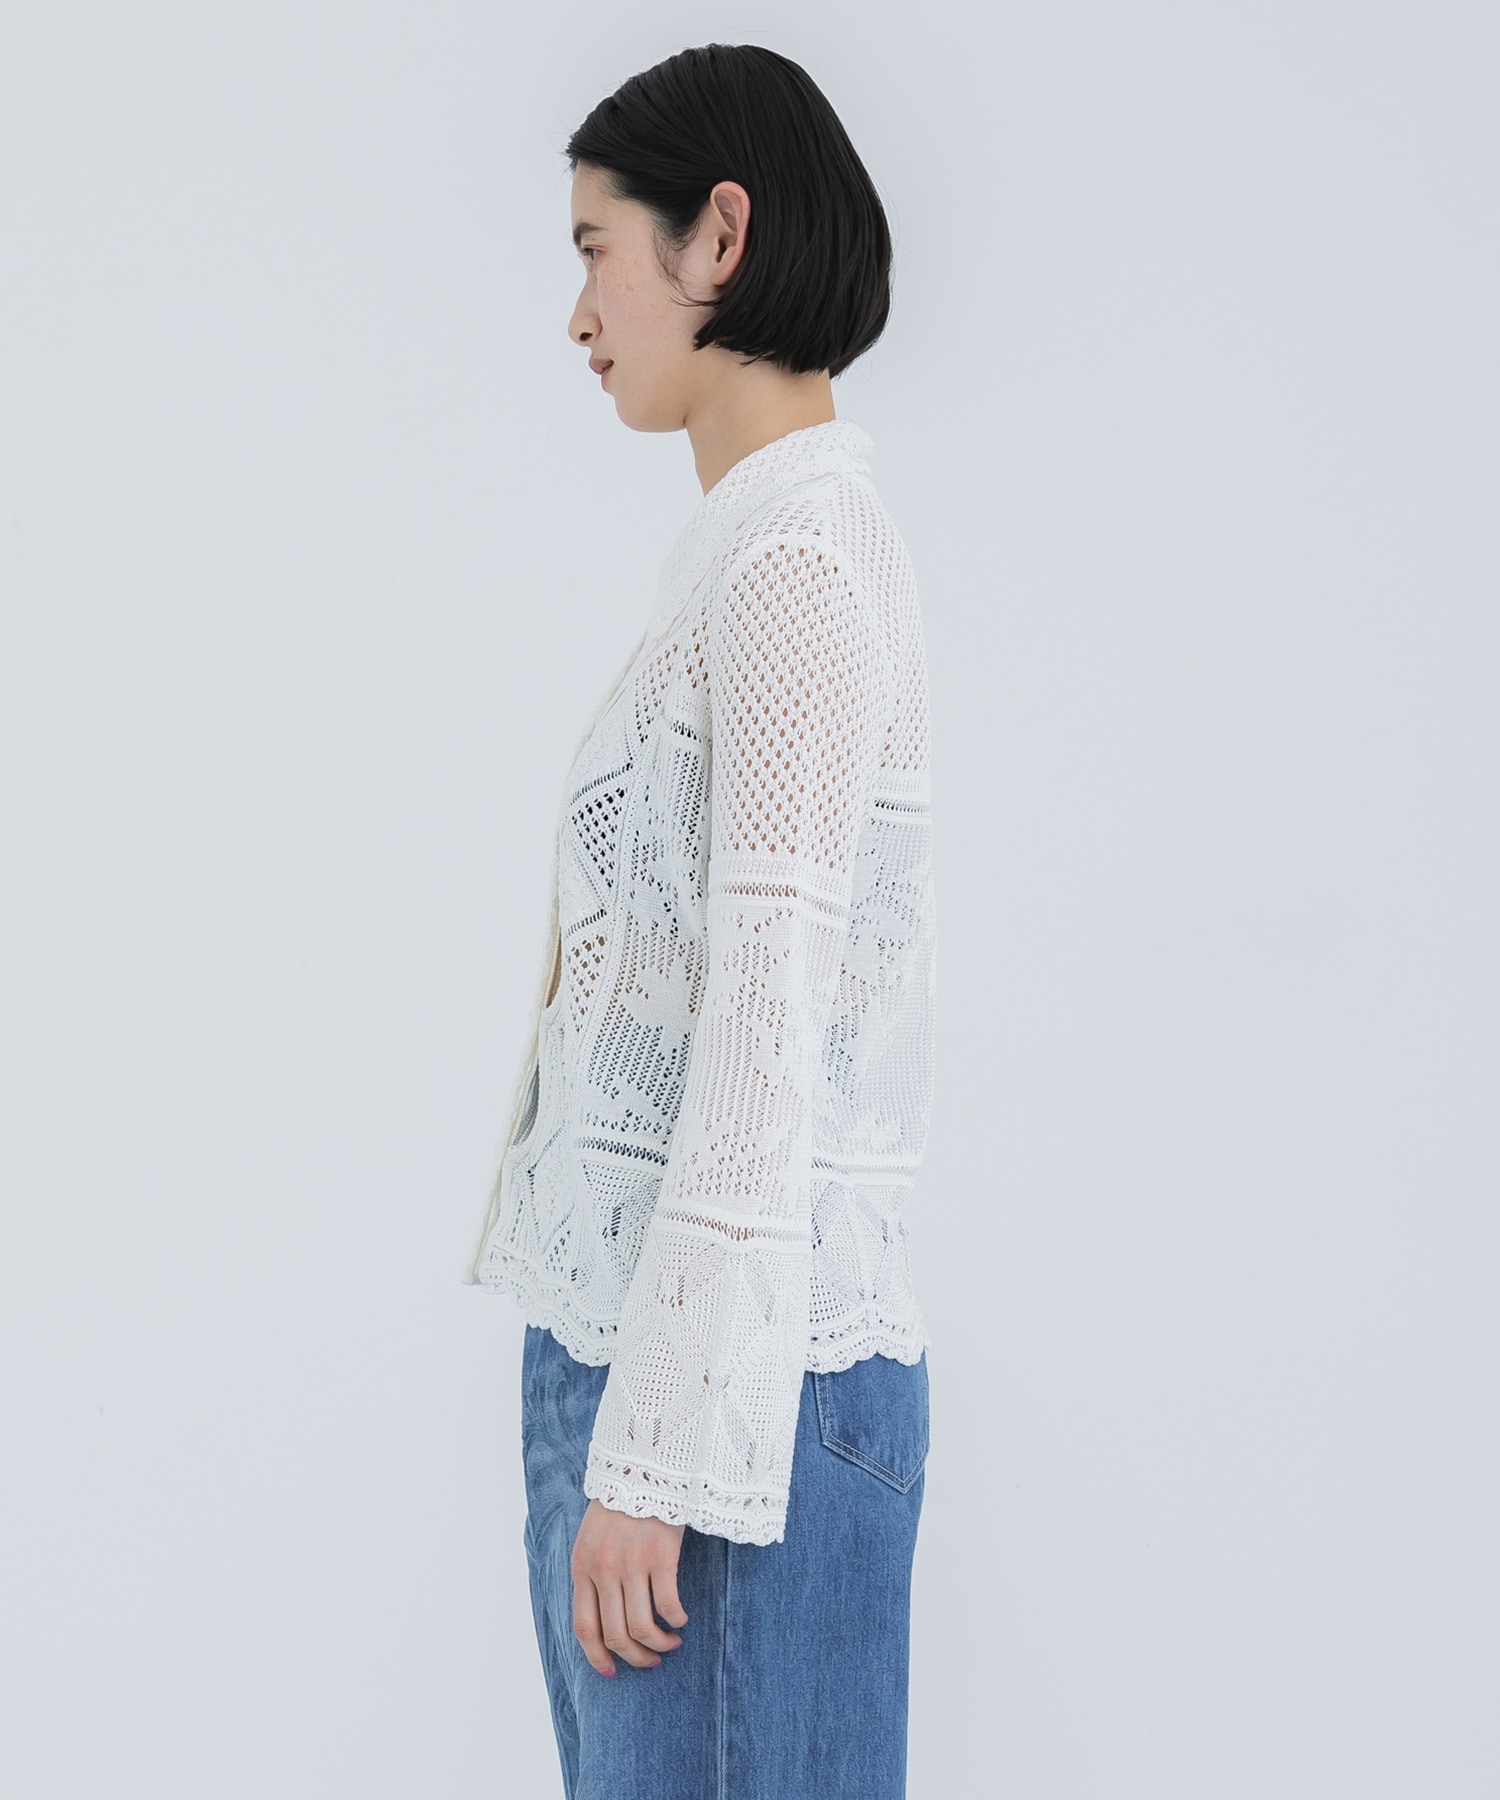 Cotton Lace Knitted Cardigan Mame Kurogouchi